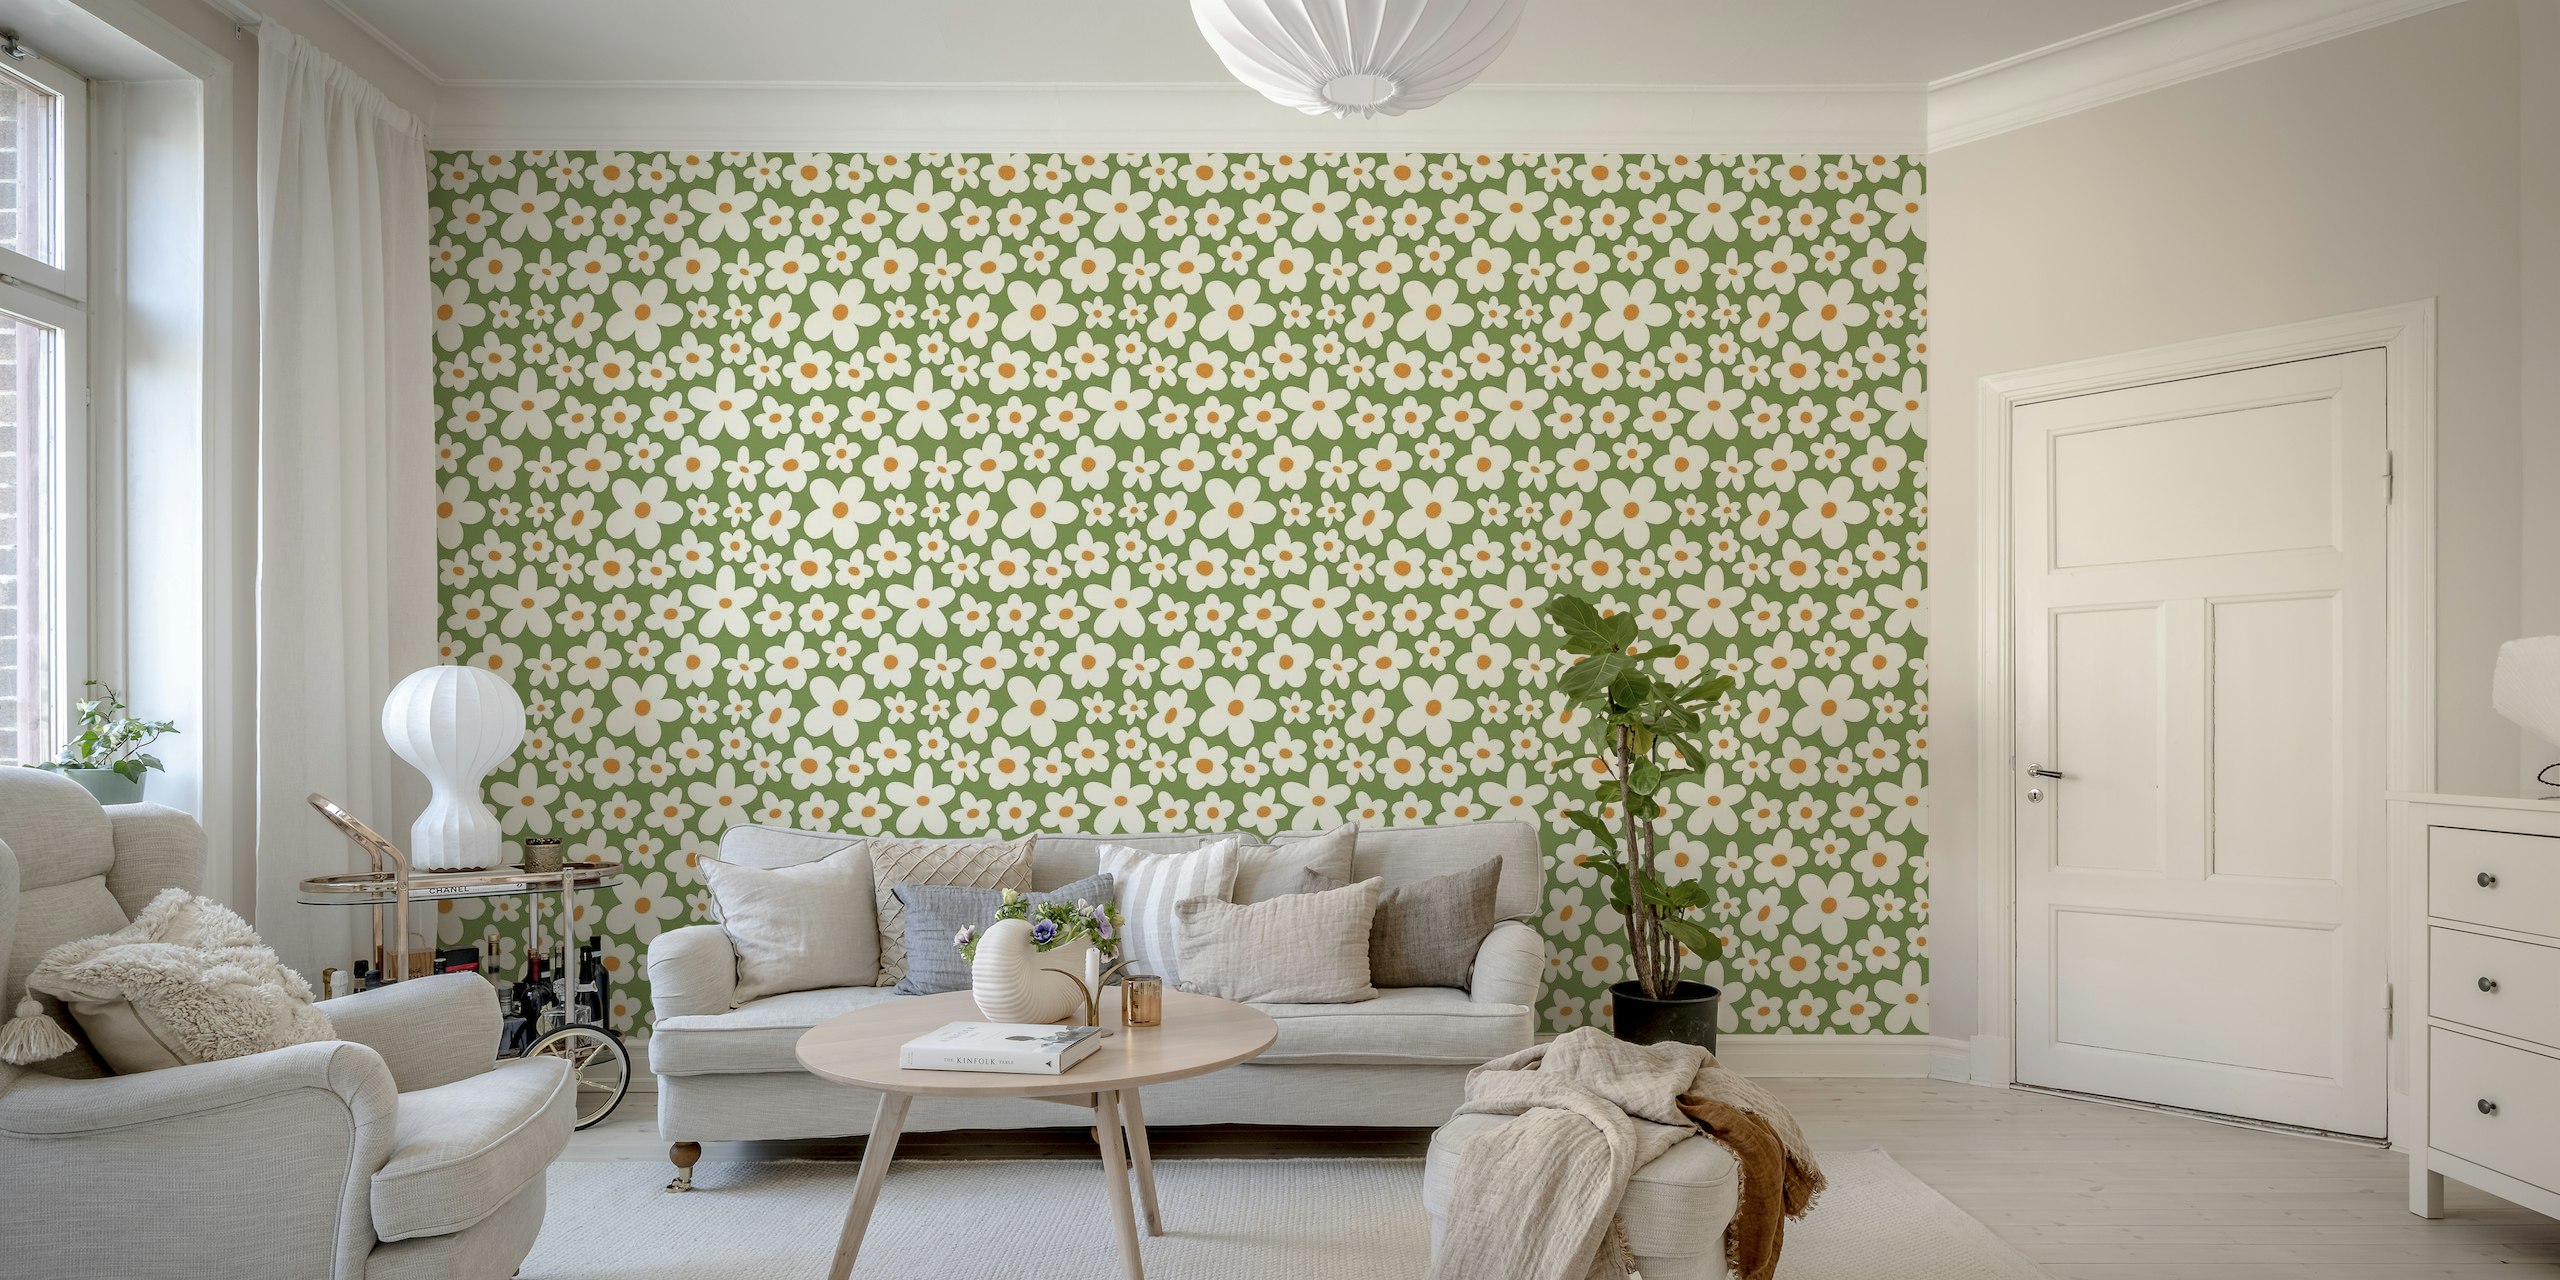 Groovy flower pattern wallpaper